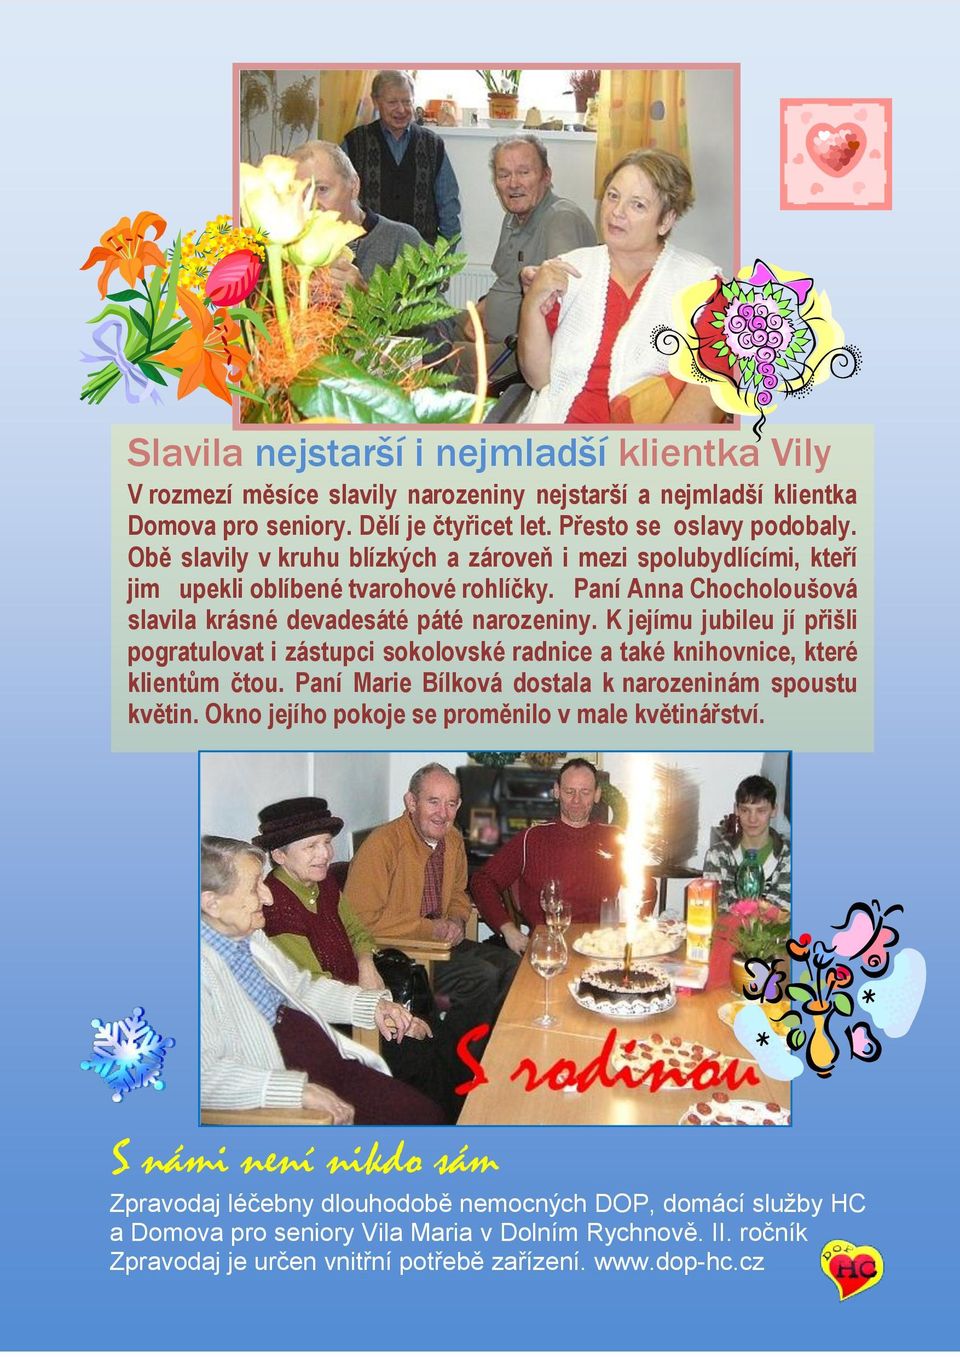 K jejímu jubileu jí přišli pogratulovat i zástupci sokolovské radnice a také knihovnice, které klientům čtou. Paní Marie Bílková dostala k narozeninám spoustu květin.